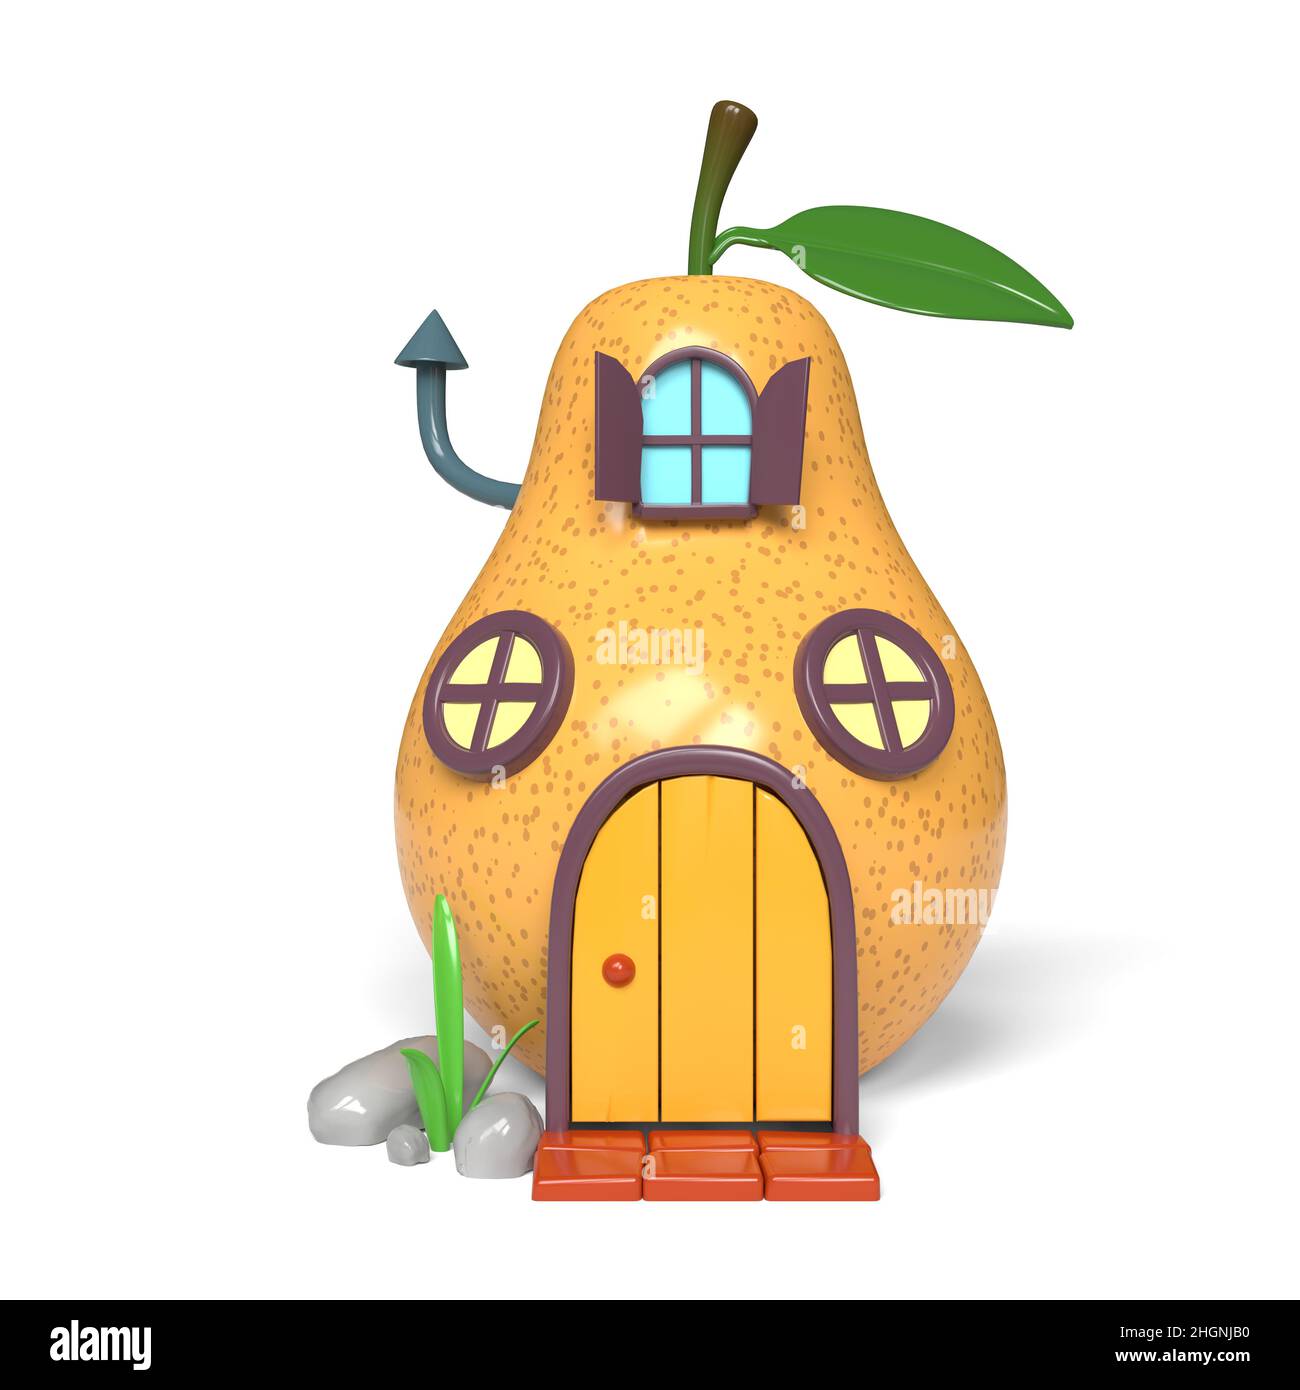 Cute cartoon pear house. 3D illustration. Stock Photo